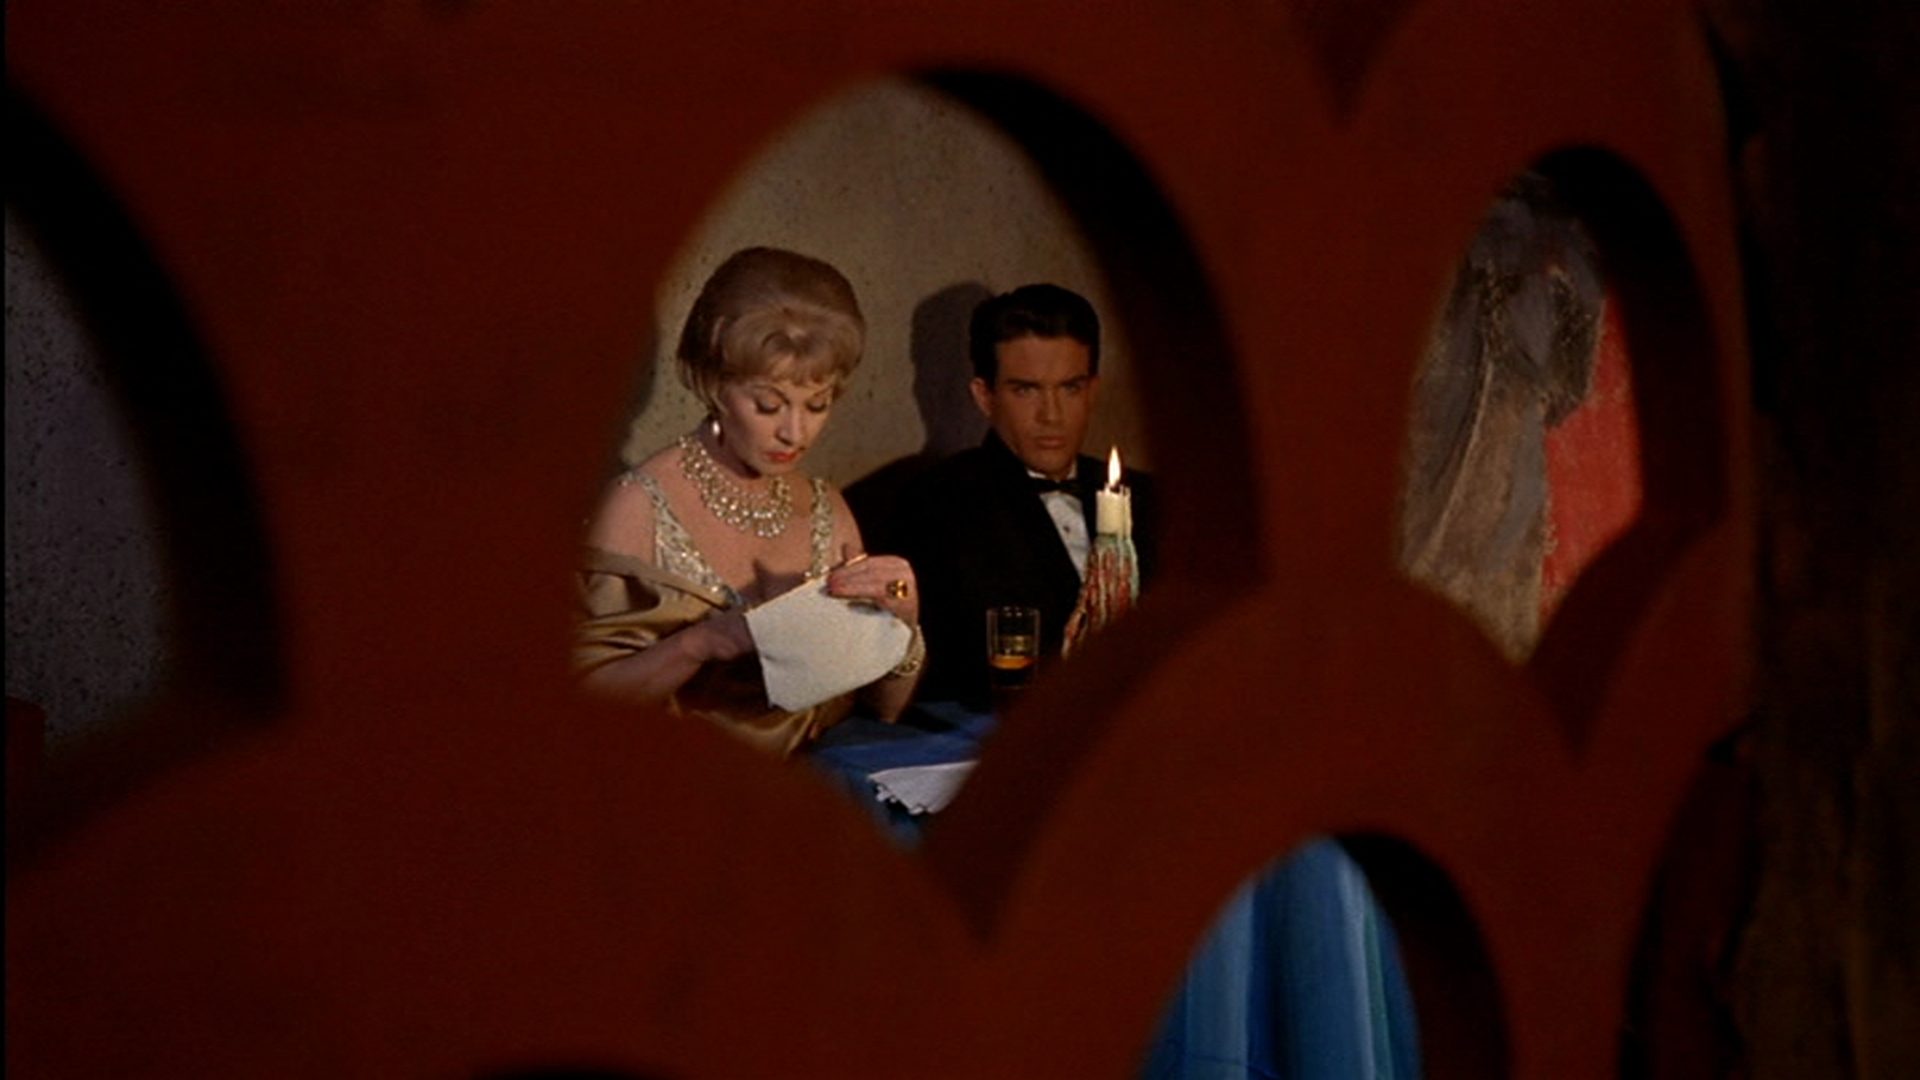 Vivien Leigh und Warren Beatty in einem italienischen Etablissement durch eine kleine Öffnung einer roten Abtrennung betrachtet; sitzen an einem kleinen Tisch bei Kerzenlicht; sie sucht etwas in ihrer Handtasche, er starrt angestrengt in den Raum hinein.